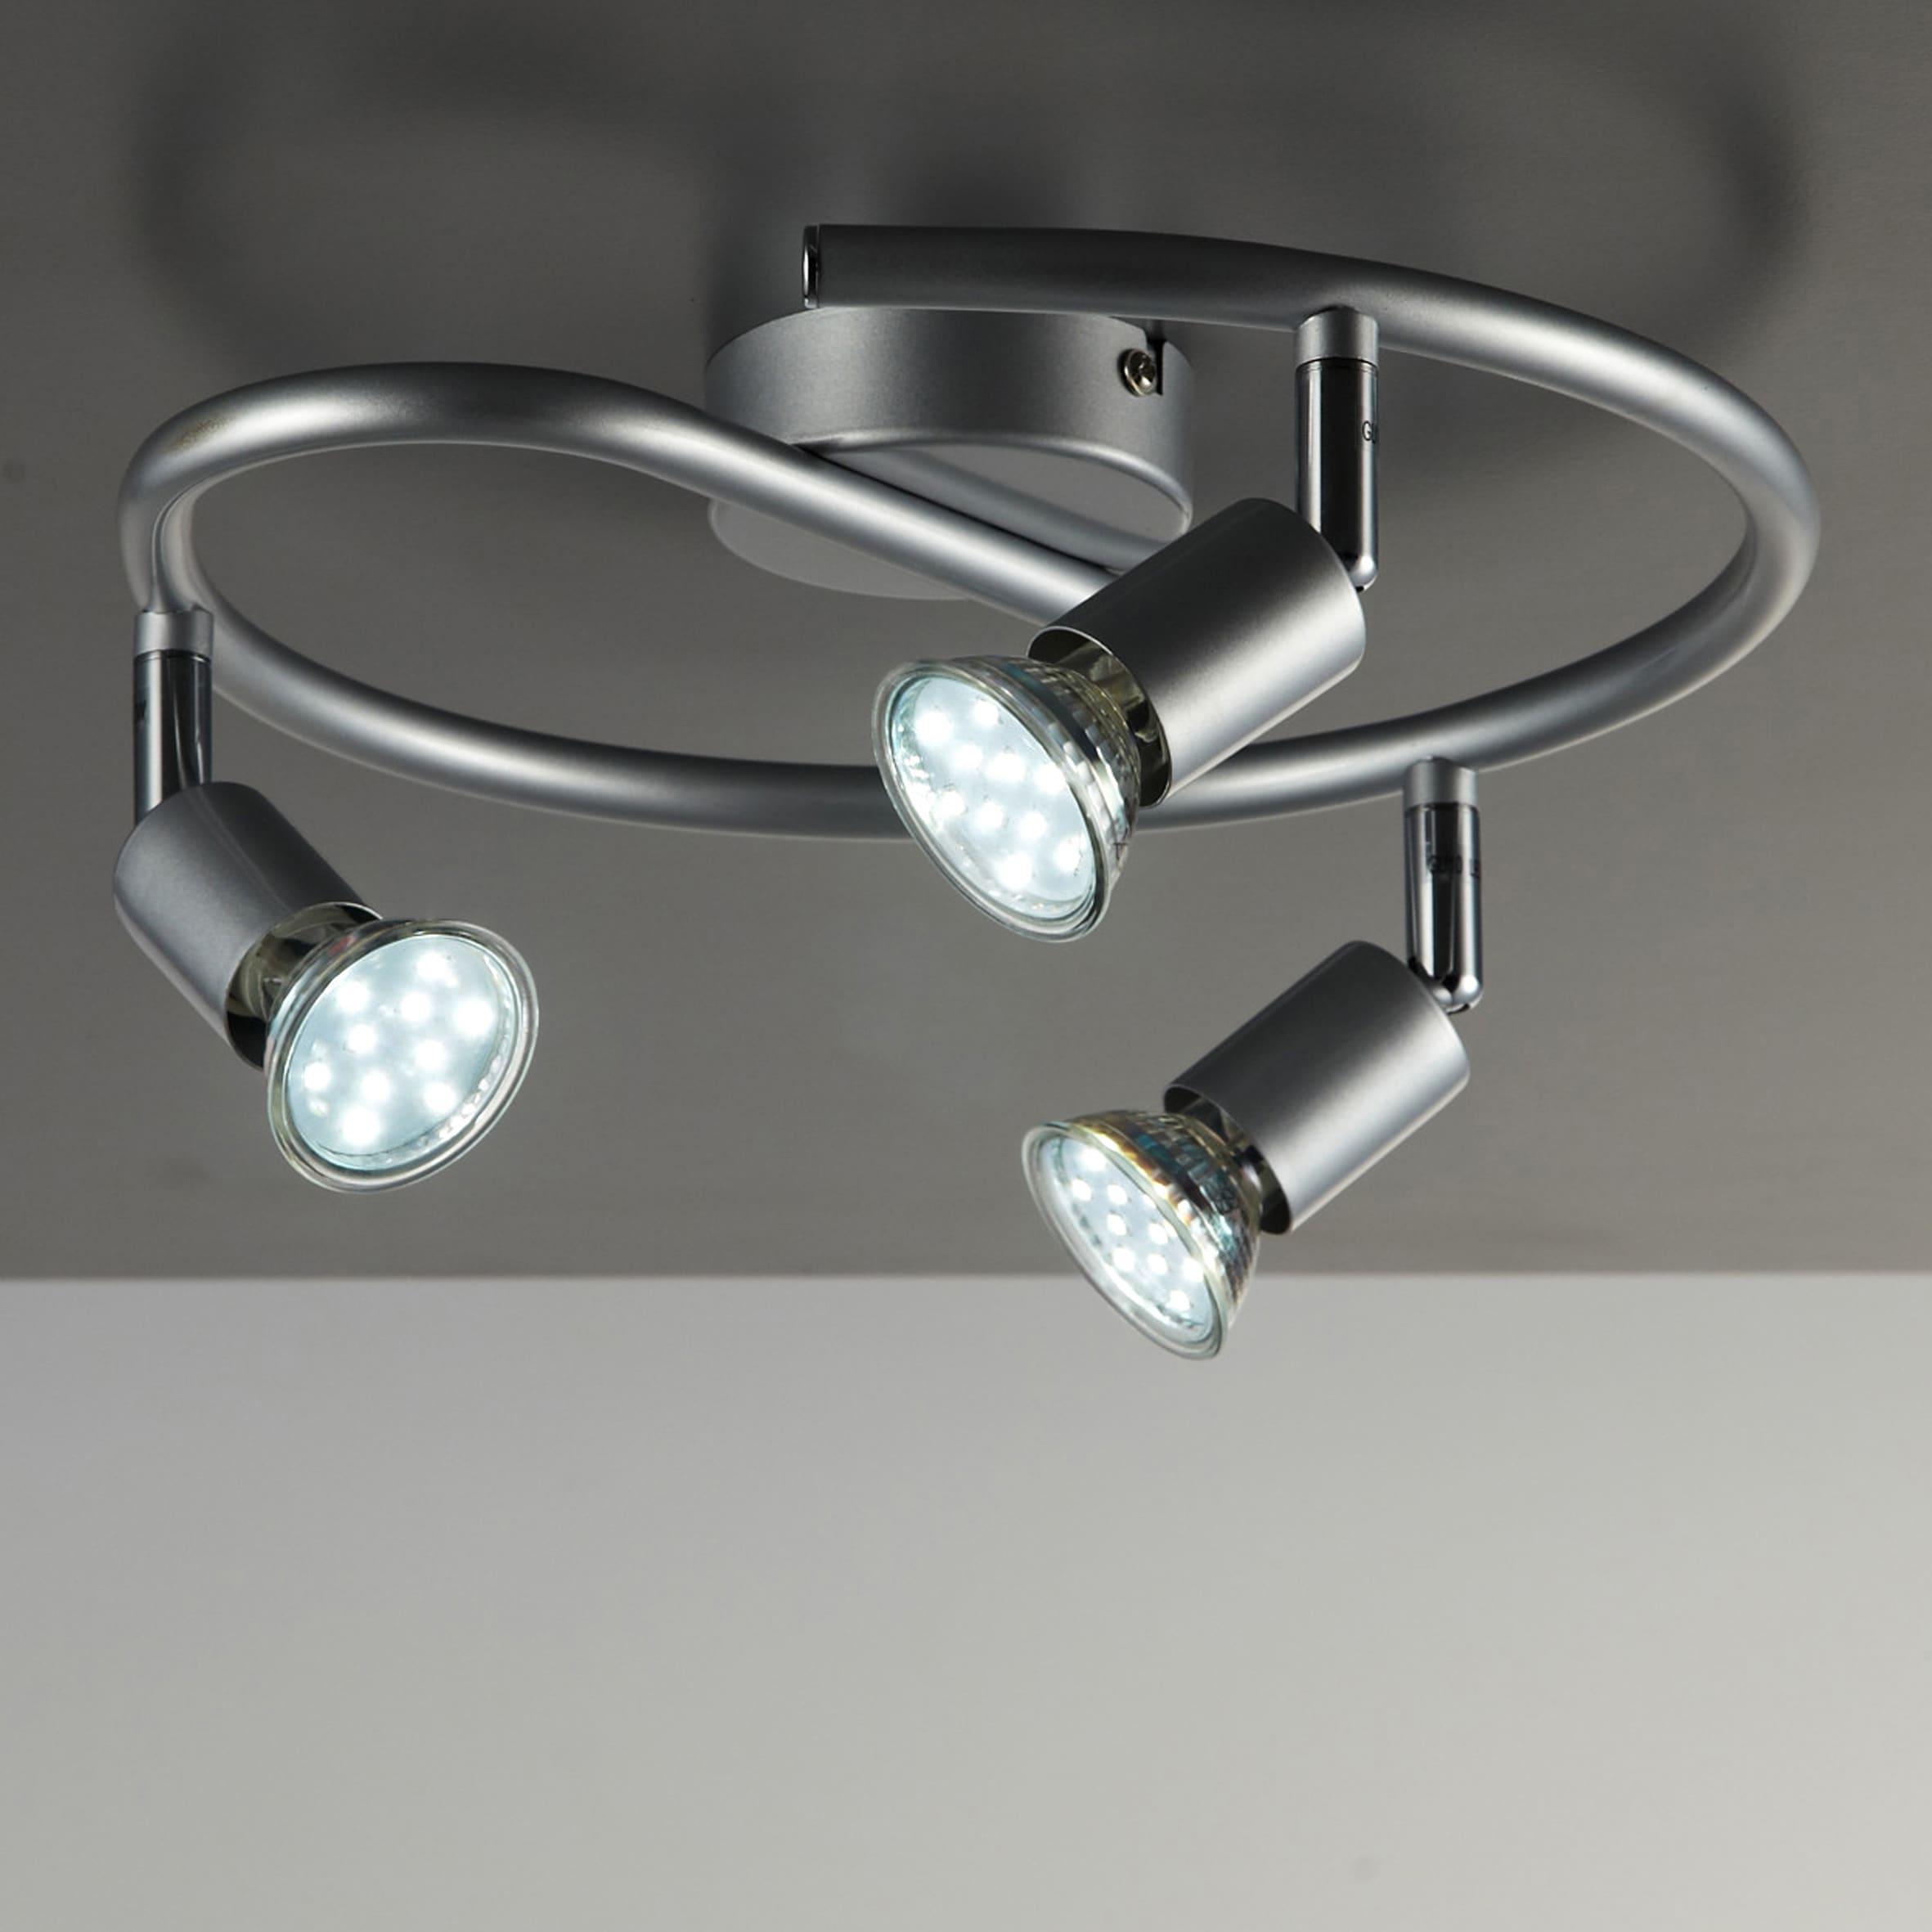 PHILIPS LED Design Deckenleuchte Deckenlampe Decken Spot mit warmweissem Licht 